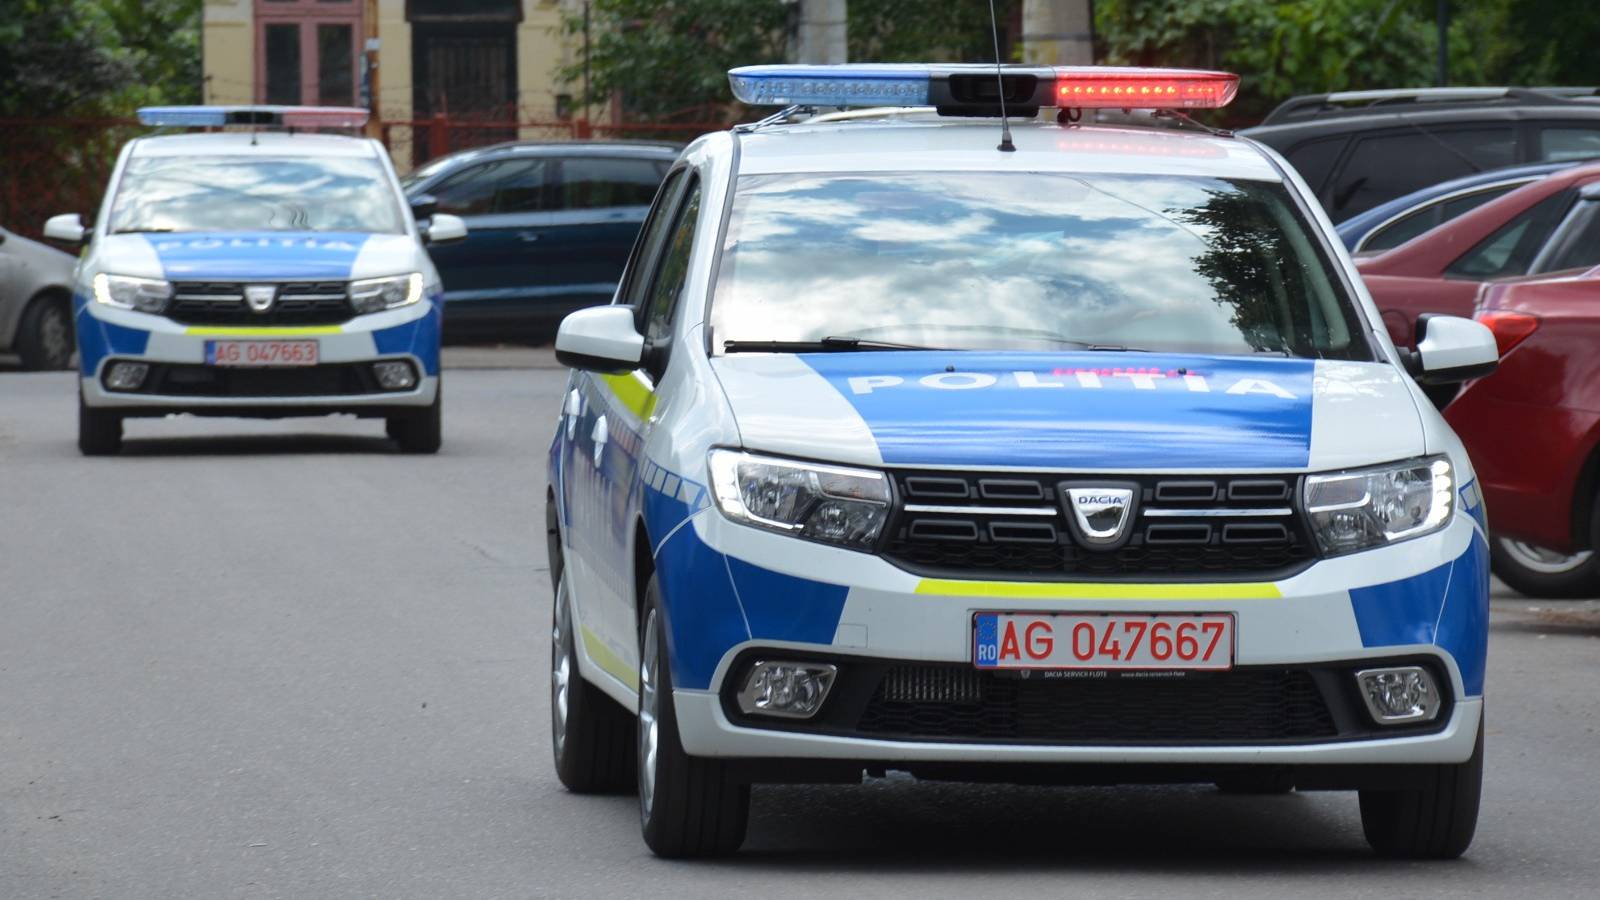 Advarsel om forfalskning af penge fra det rumænske politi